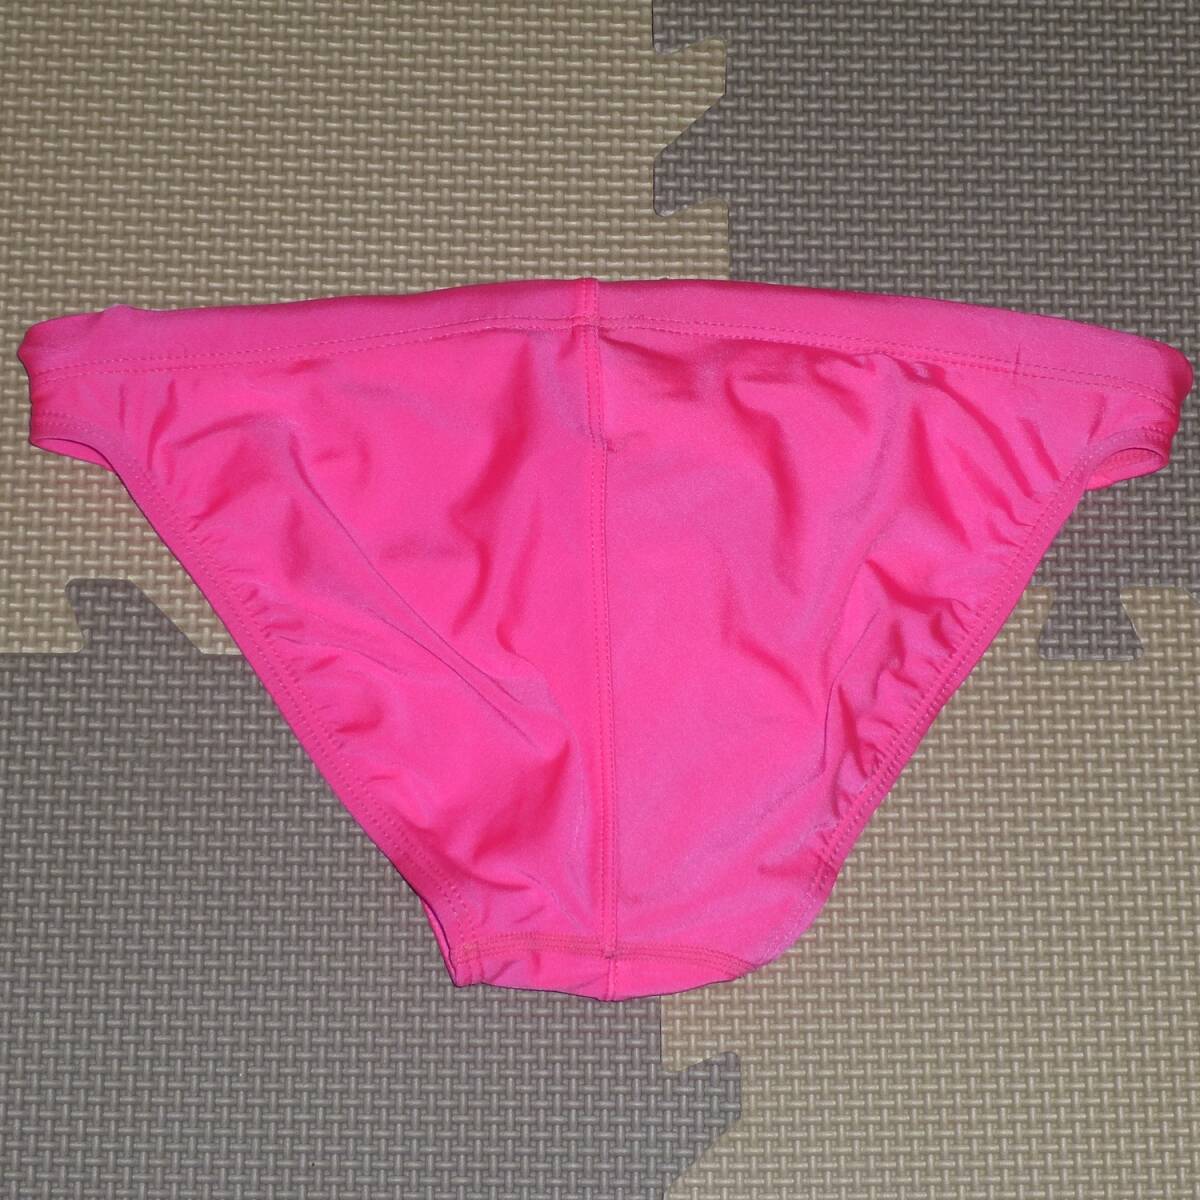 ★ASICS アシックス 水着 スイムウェア ハイドロCD XOサイズ ピンク★ ブーメランパンツ 水泳 競泳 学生の画像2